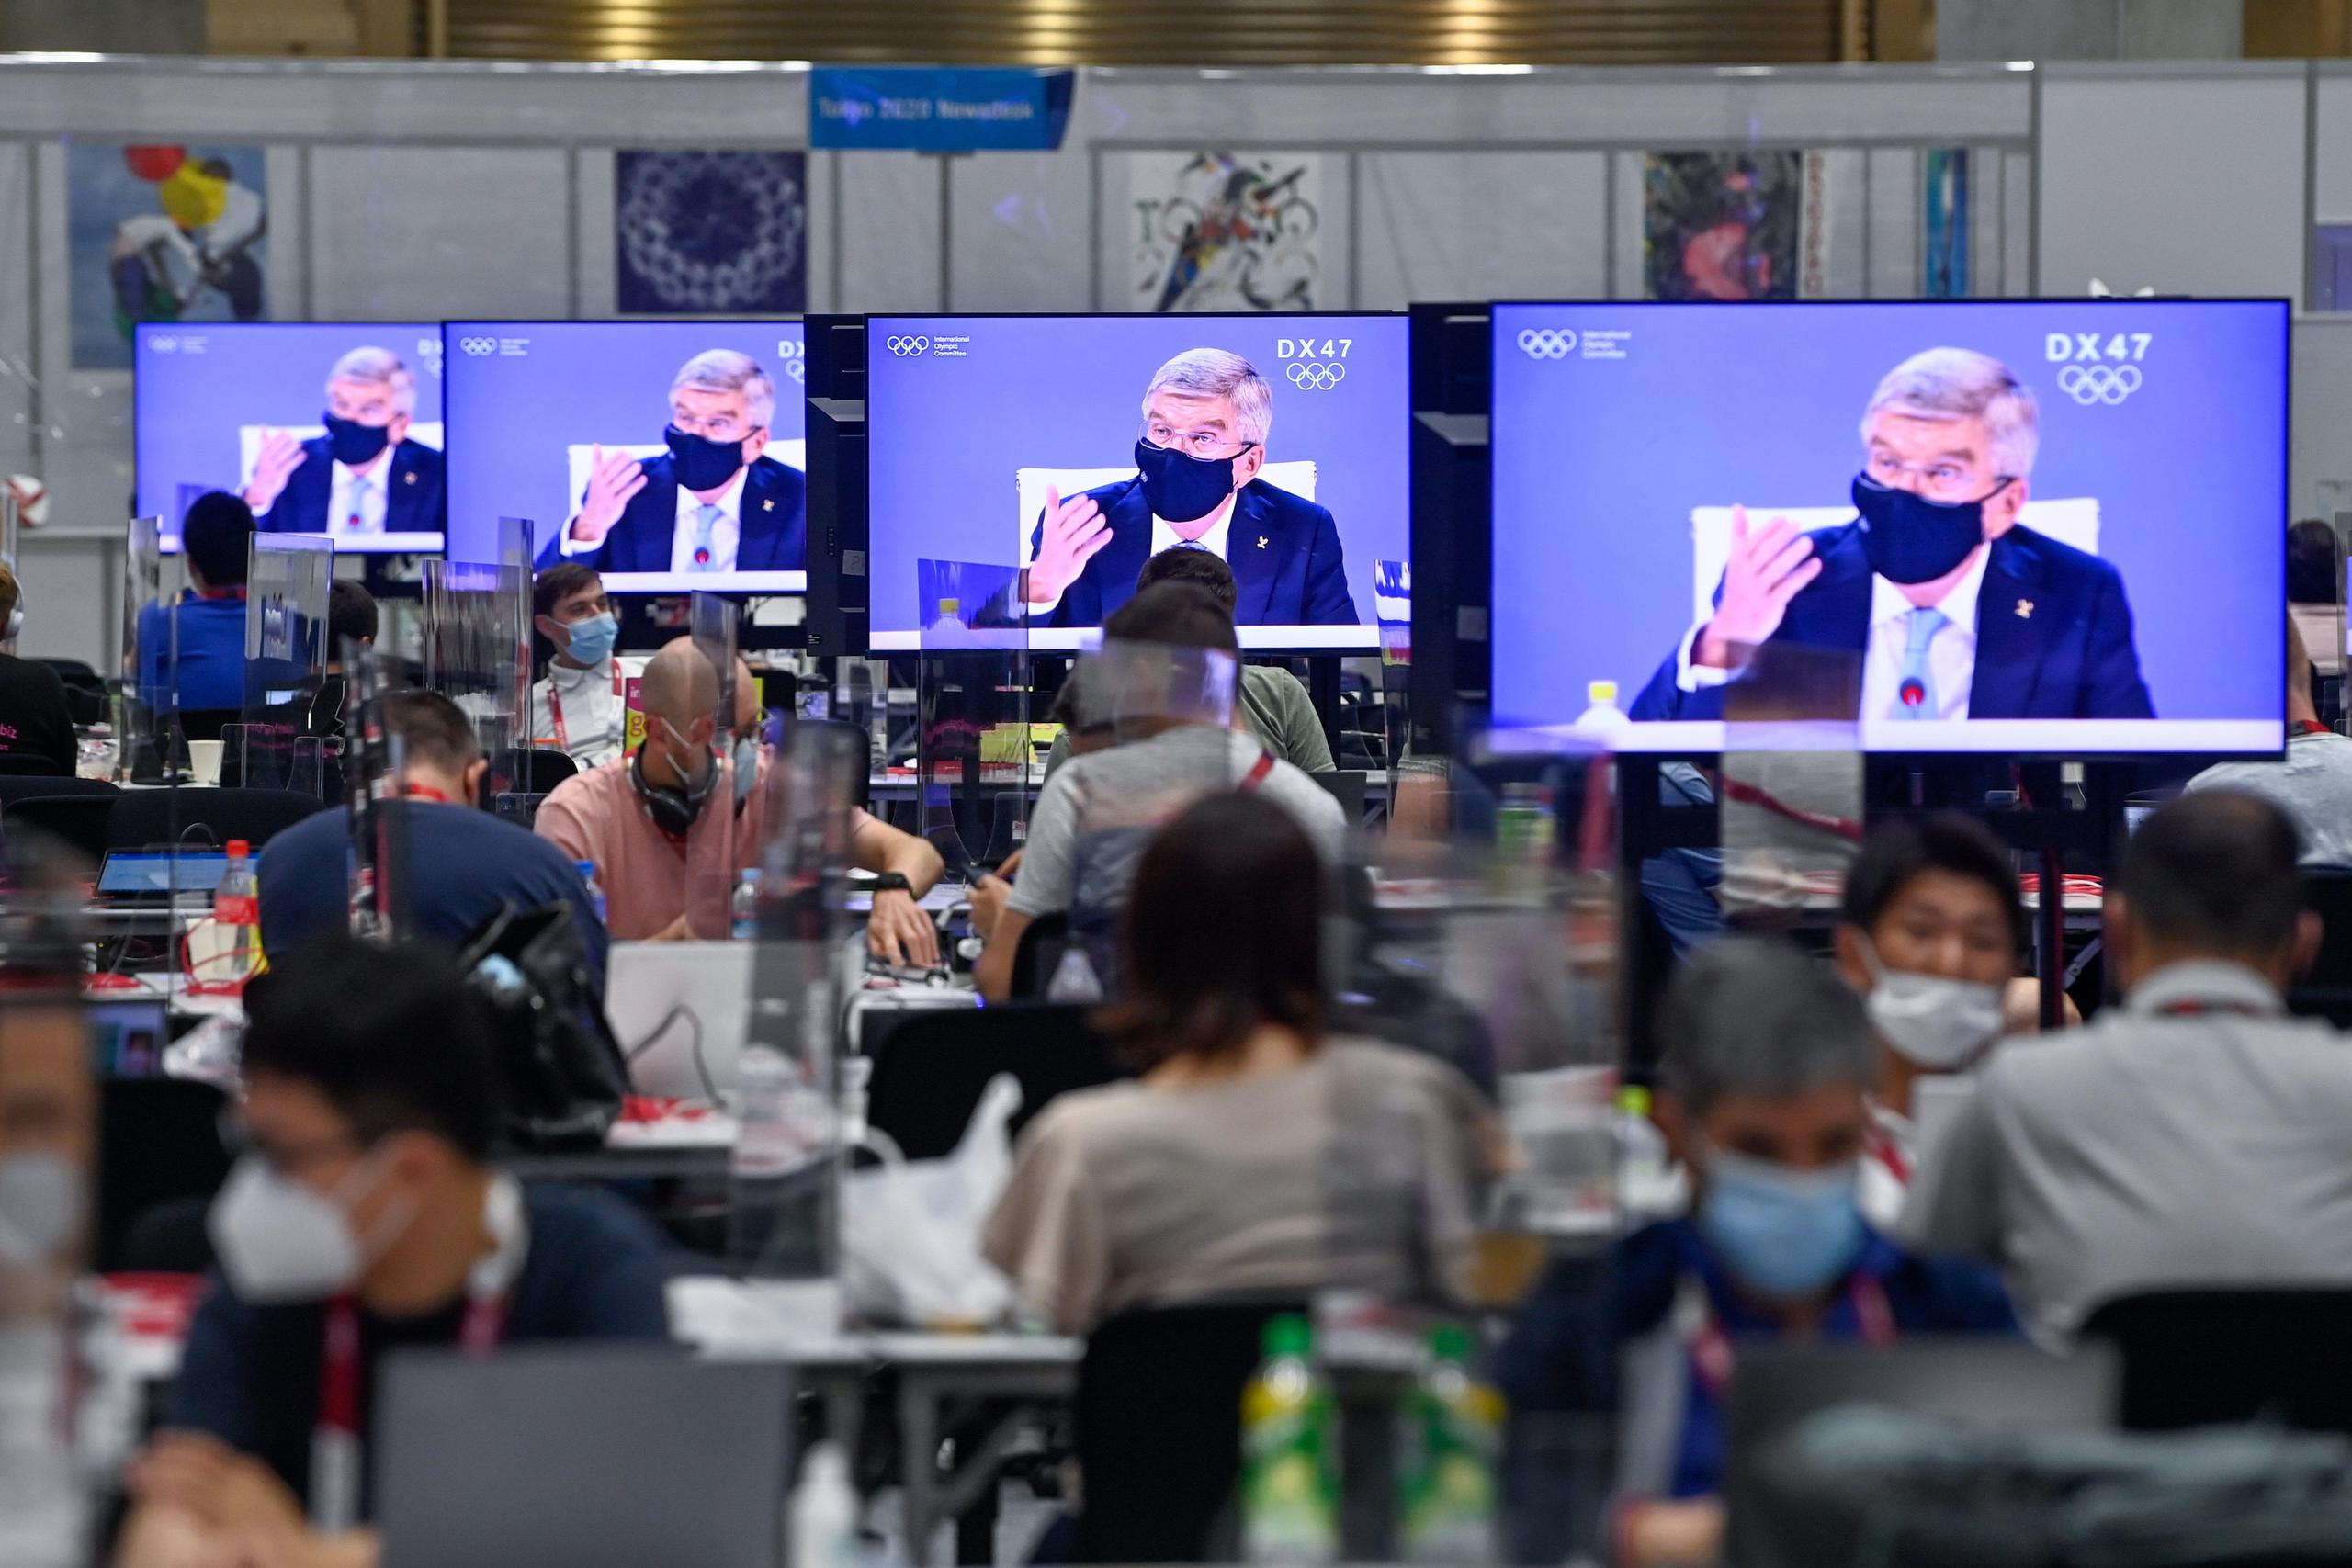 El presidente del Comité Olímpico Internacional, Thomas Bach, es mostrado en las pantallas del Centro de Medios de los Juegos Olímpicos de Tokio.